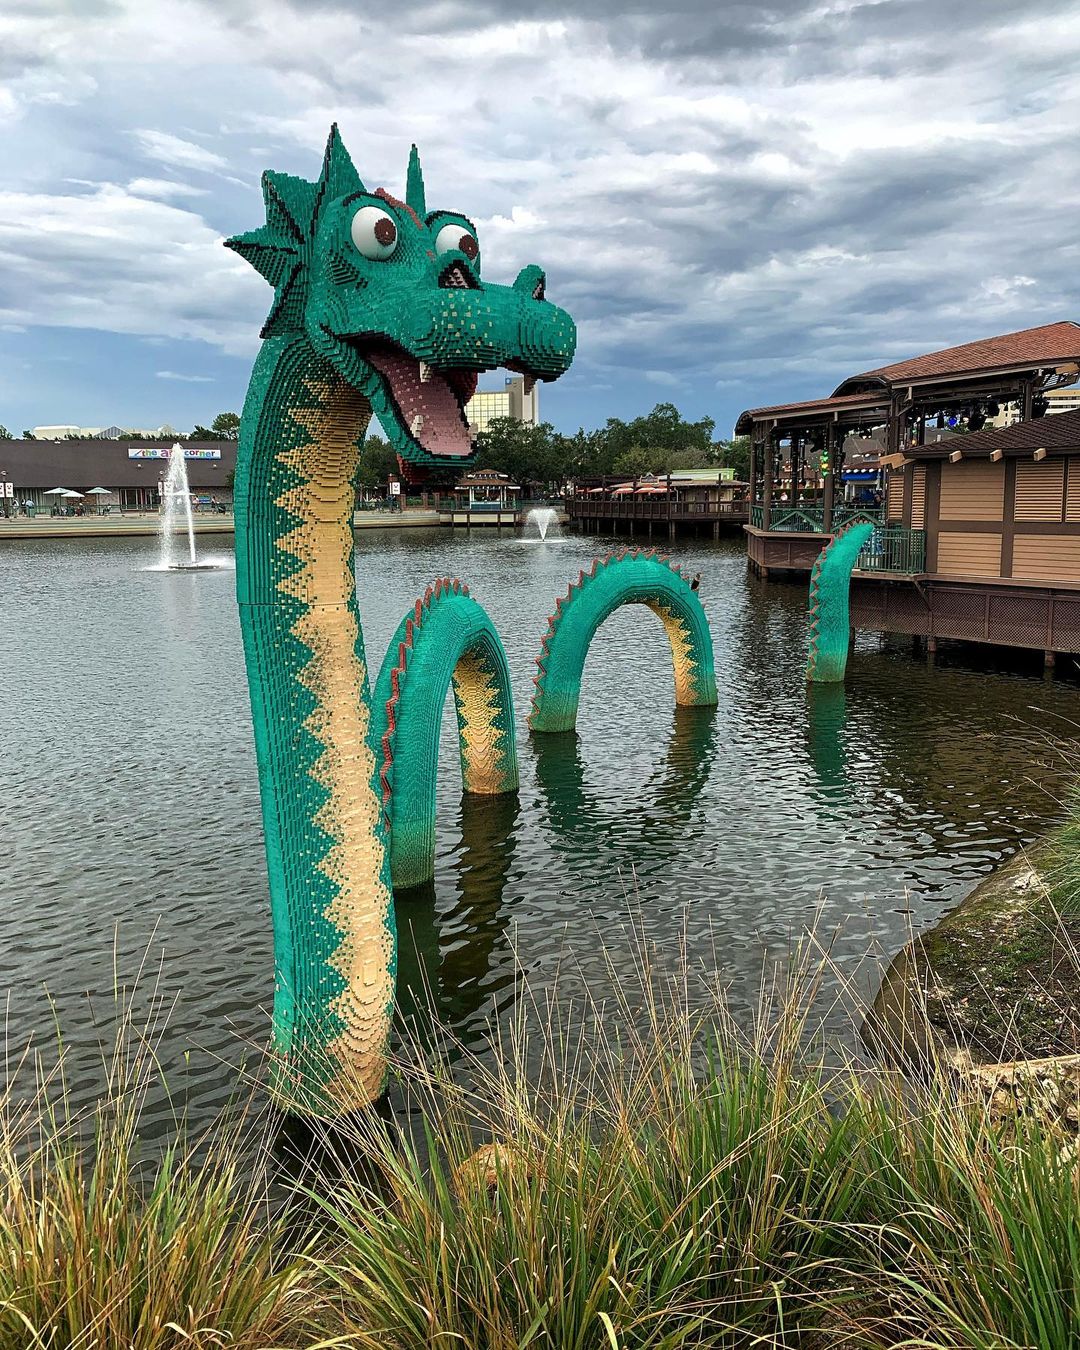 Lego Store à Disney Springs - Orlando à l'extérieur des parcs